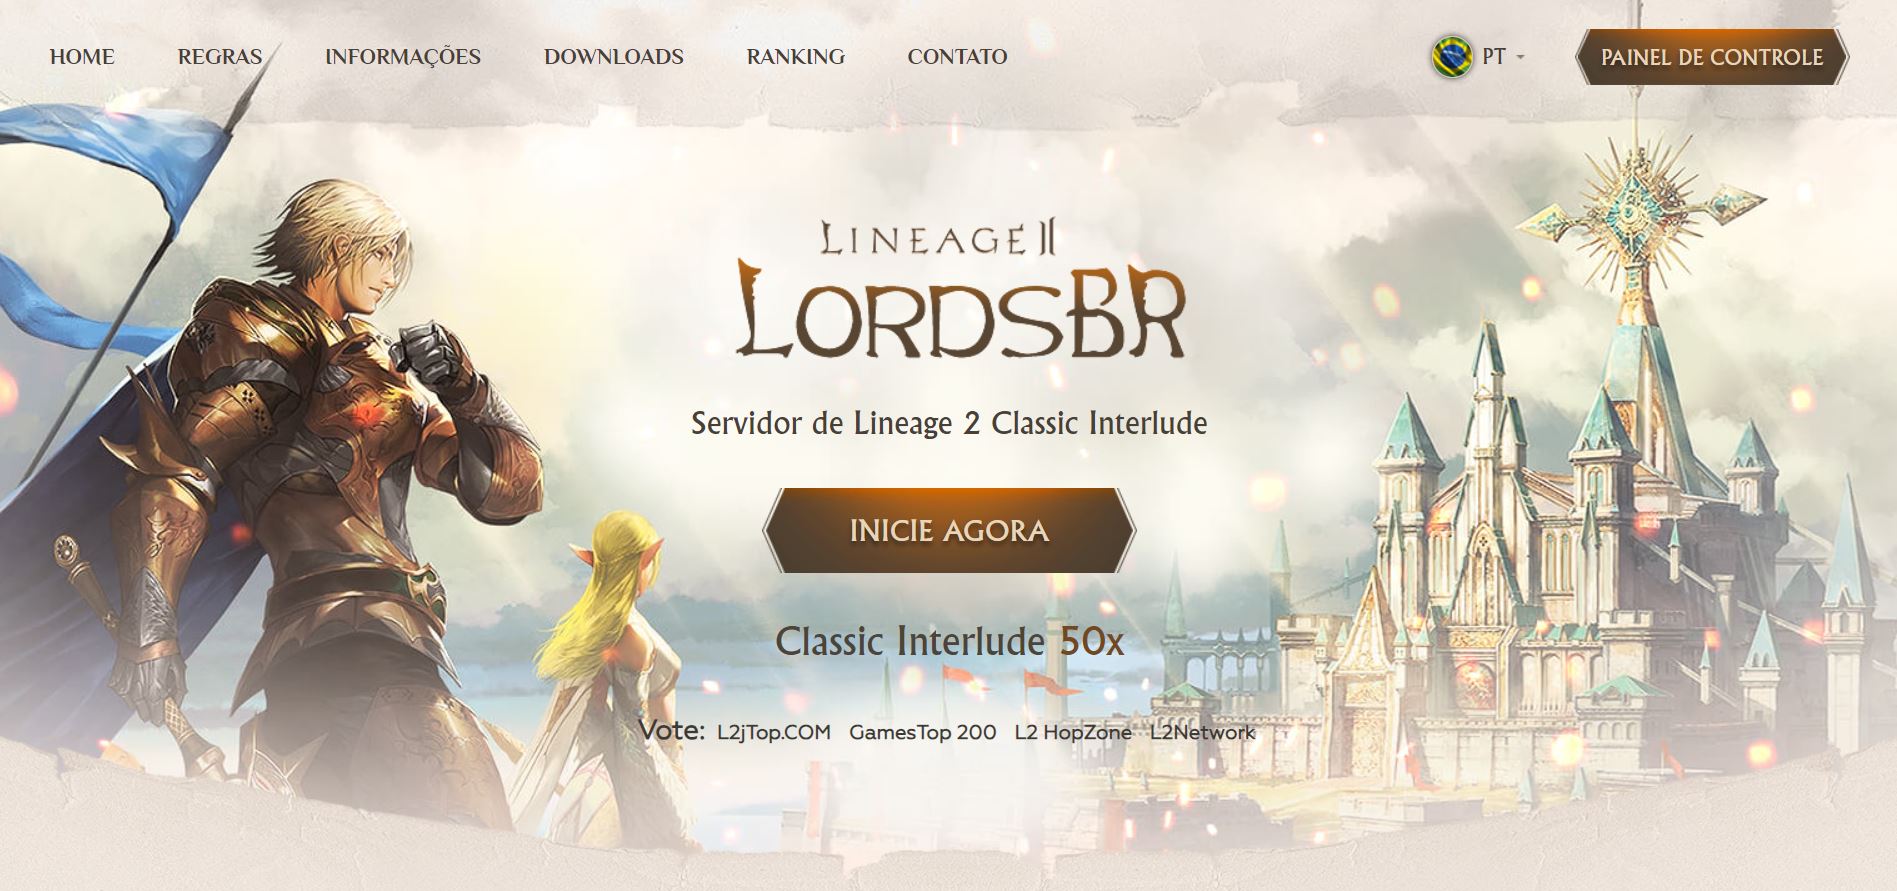 🛡️ LordsBR.com Interlude x15: Приєднуйся до Битви за Гідність! ⚔️🌟